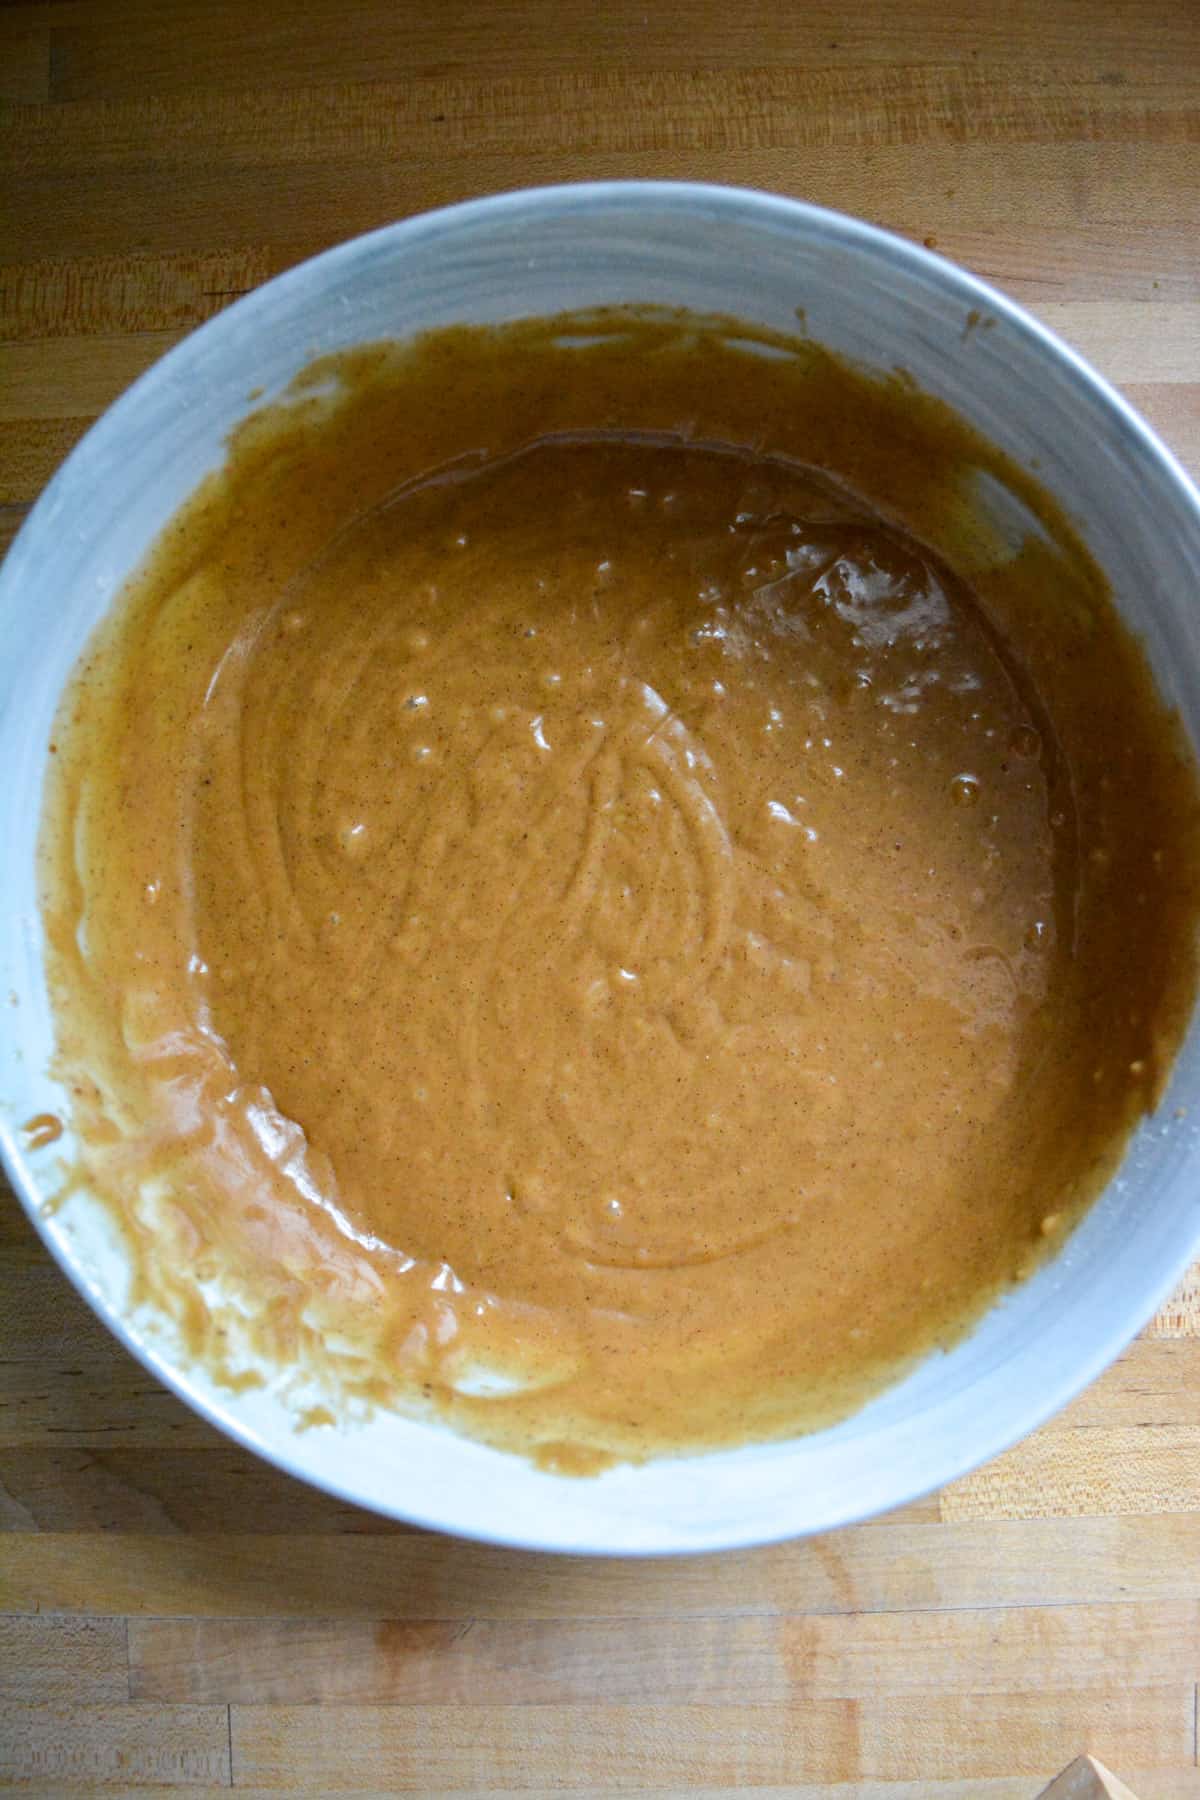 Vegan Gingerbread Cupcake batter in a mixing bowl.